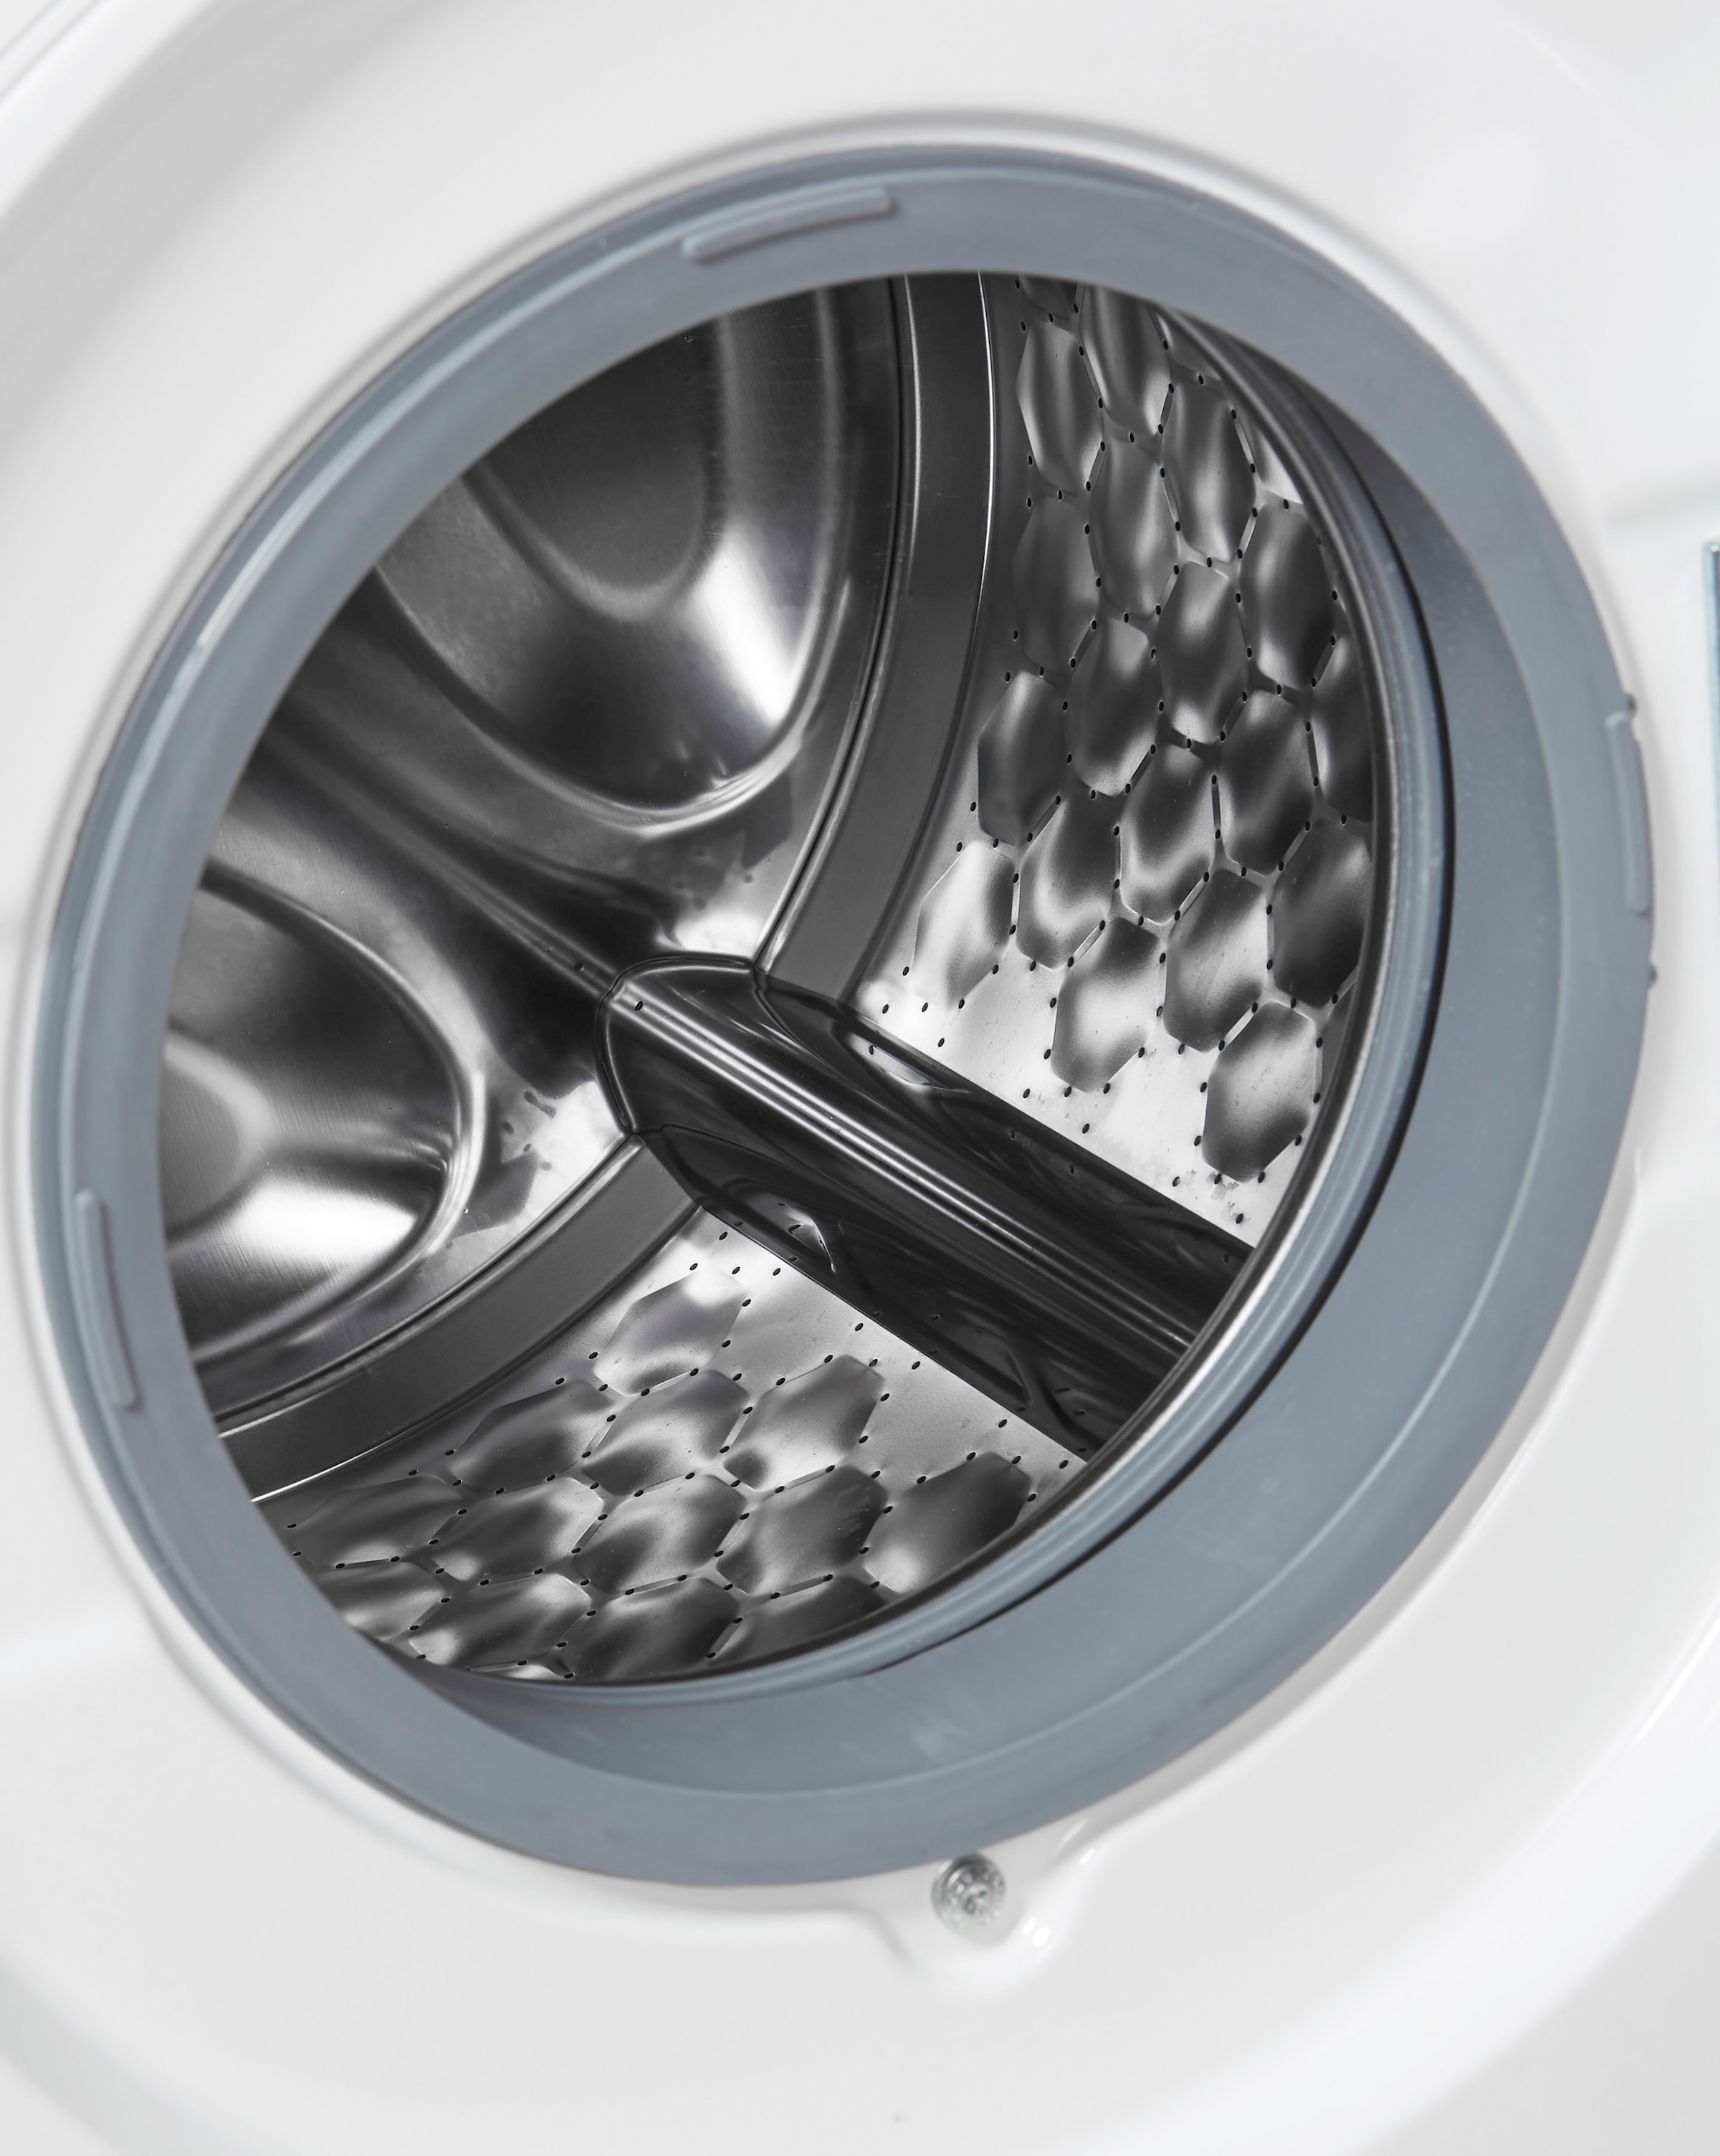 Miele Waschmaschine »WSI863WCS D LW PWash&TDos«, WSI863 WCS PWash&TDos&9kg, 9 kg, 1600 U/min, QuickpowerWash für saubere Wäsche in 49 Minuten